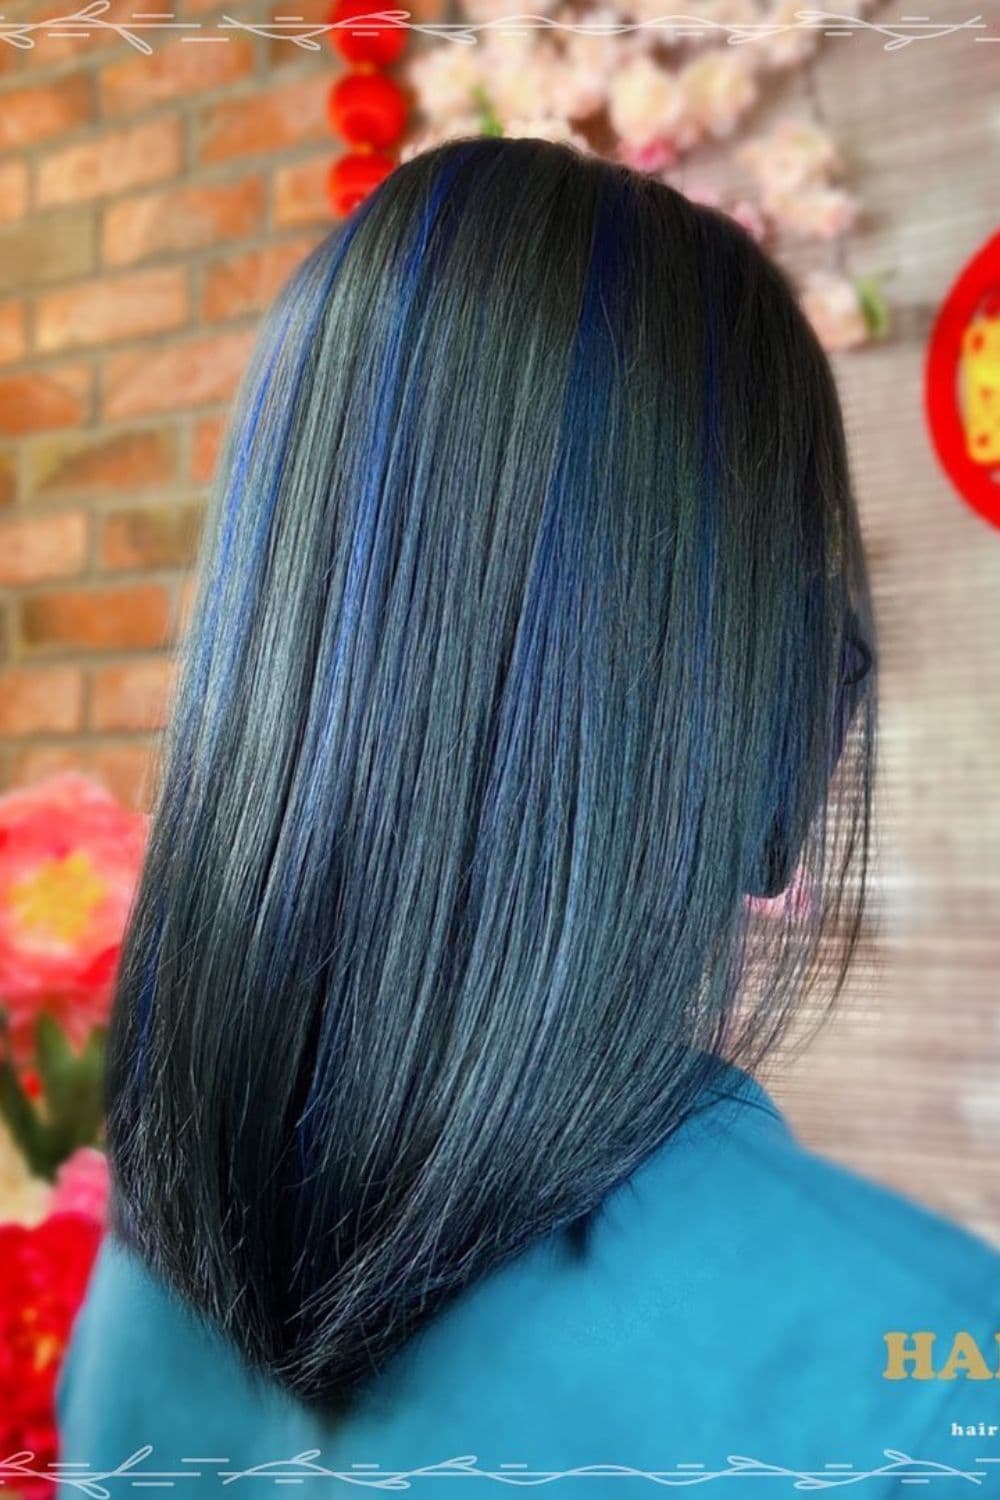 A woman with medium-length blue black hair with ocean blue highlights.